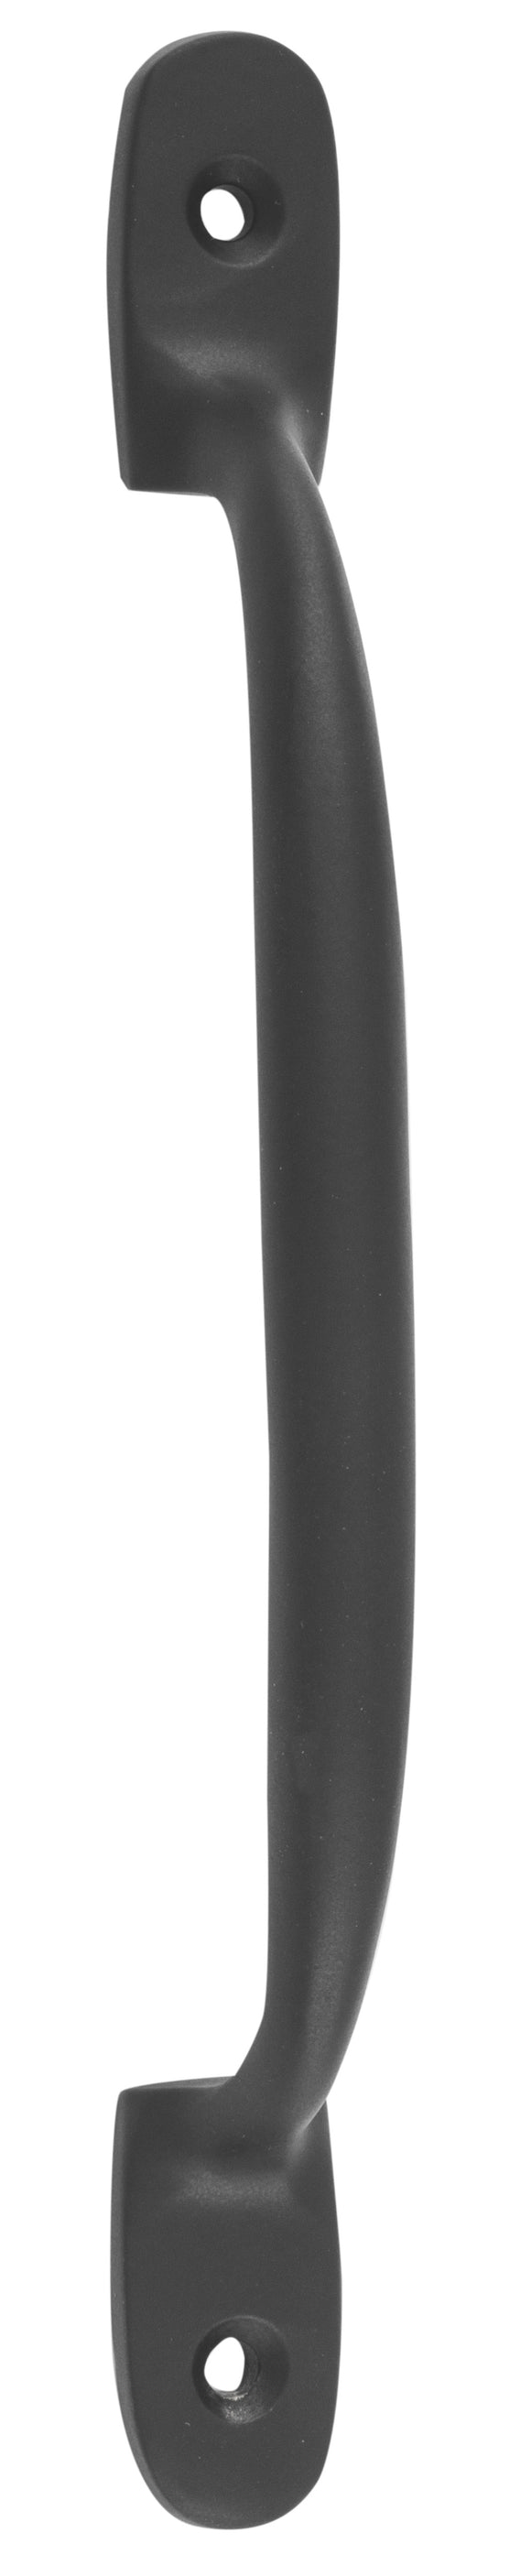 Pull Handle Standard Matt Black L150xP28mm